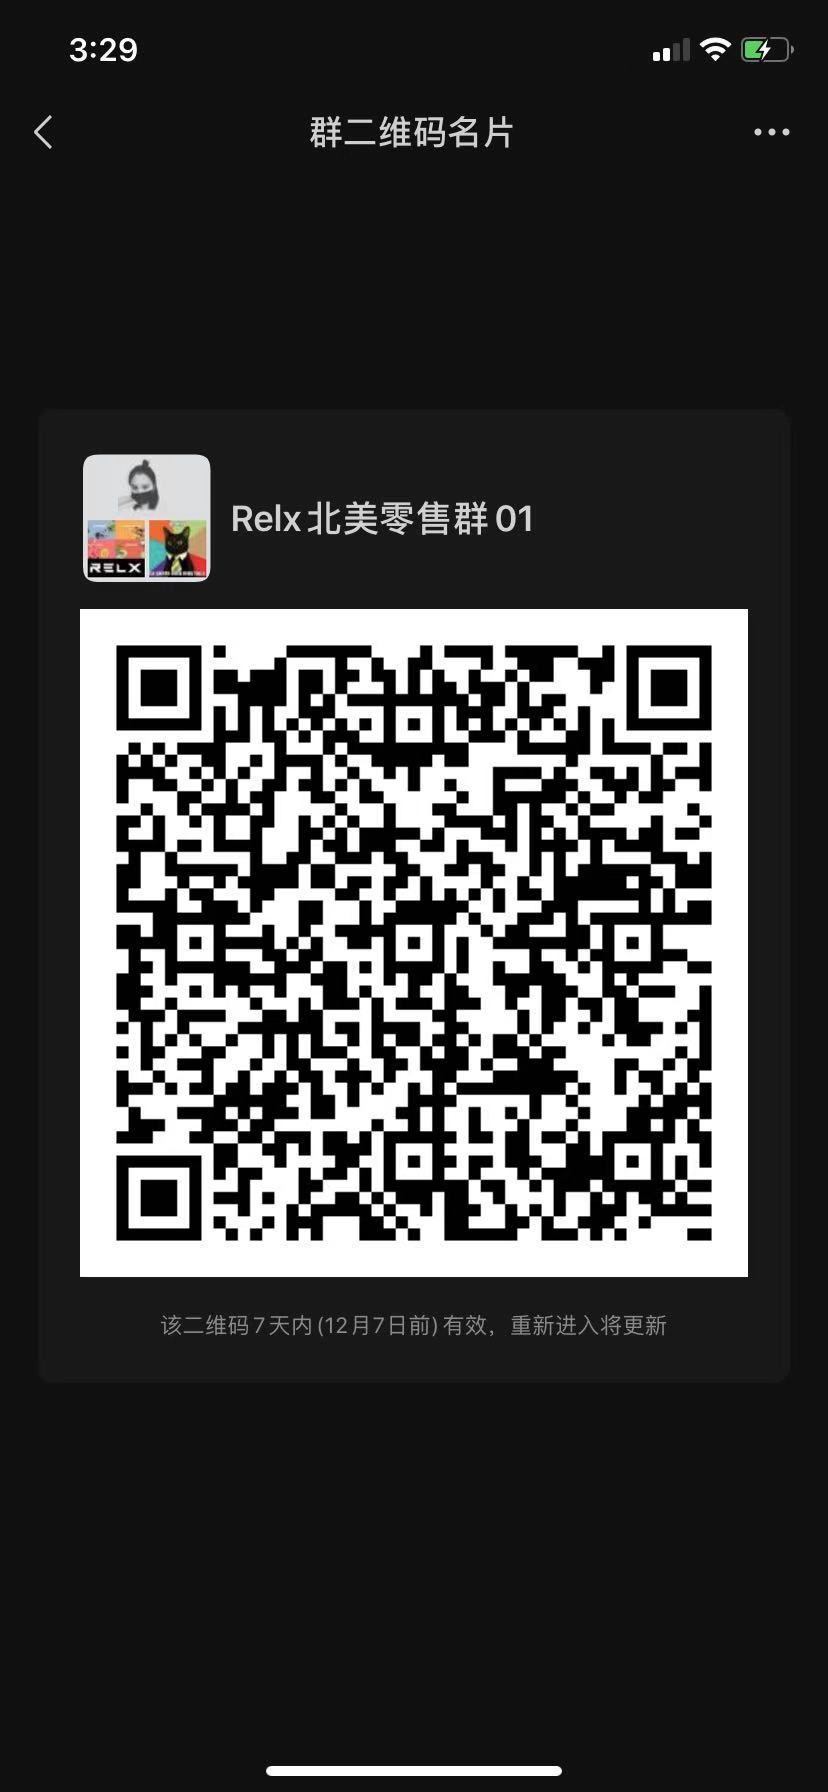 RELX 北美零售群 群微信二维码